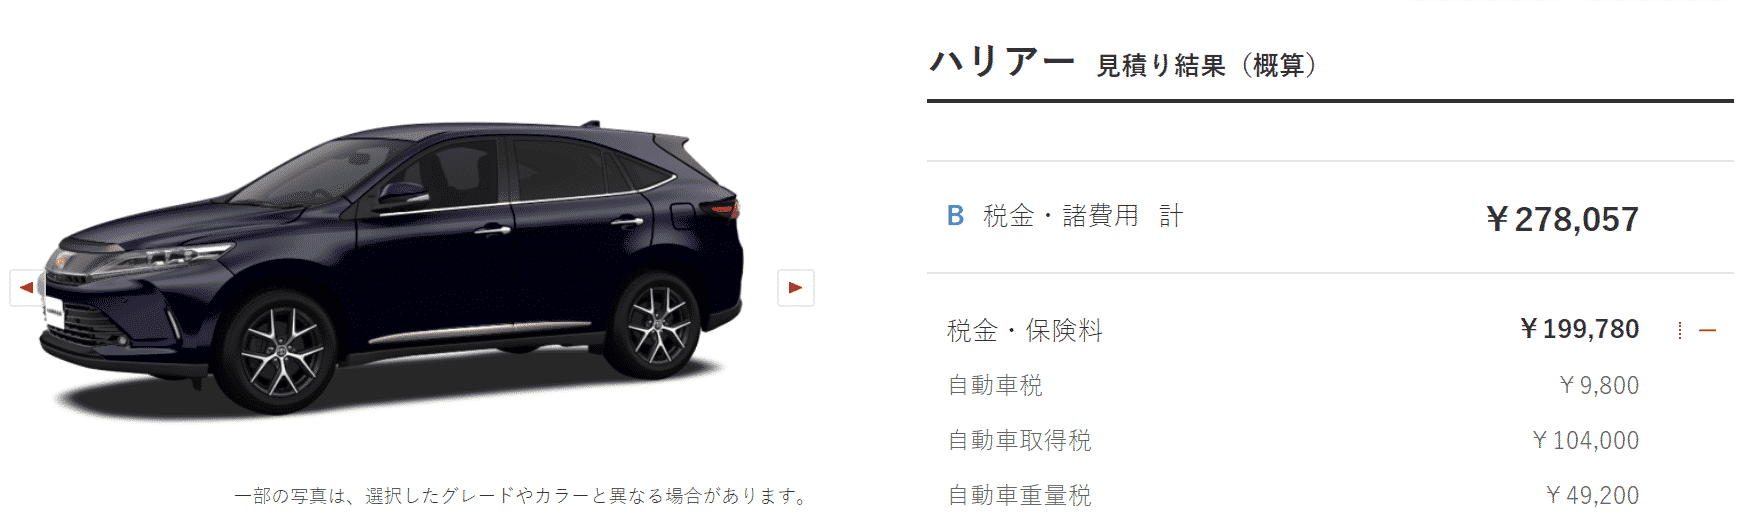 「特別仕様車 PROGRESS “Metal and Leather Package・Style BLUEISH”」ガソリン車の税額画像